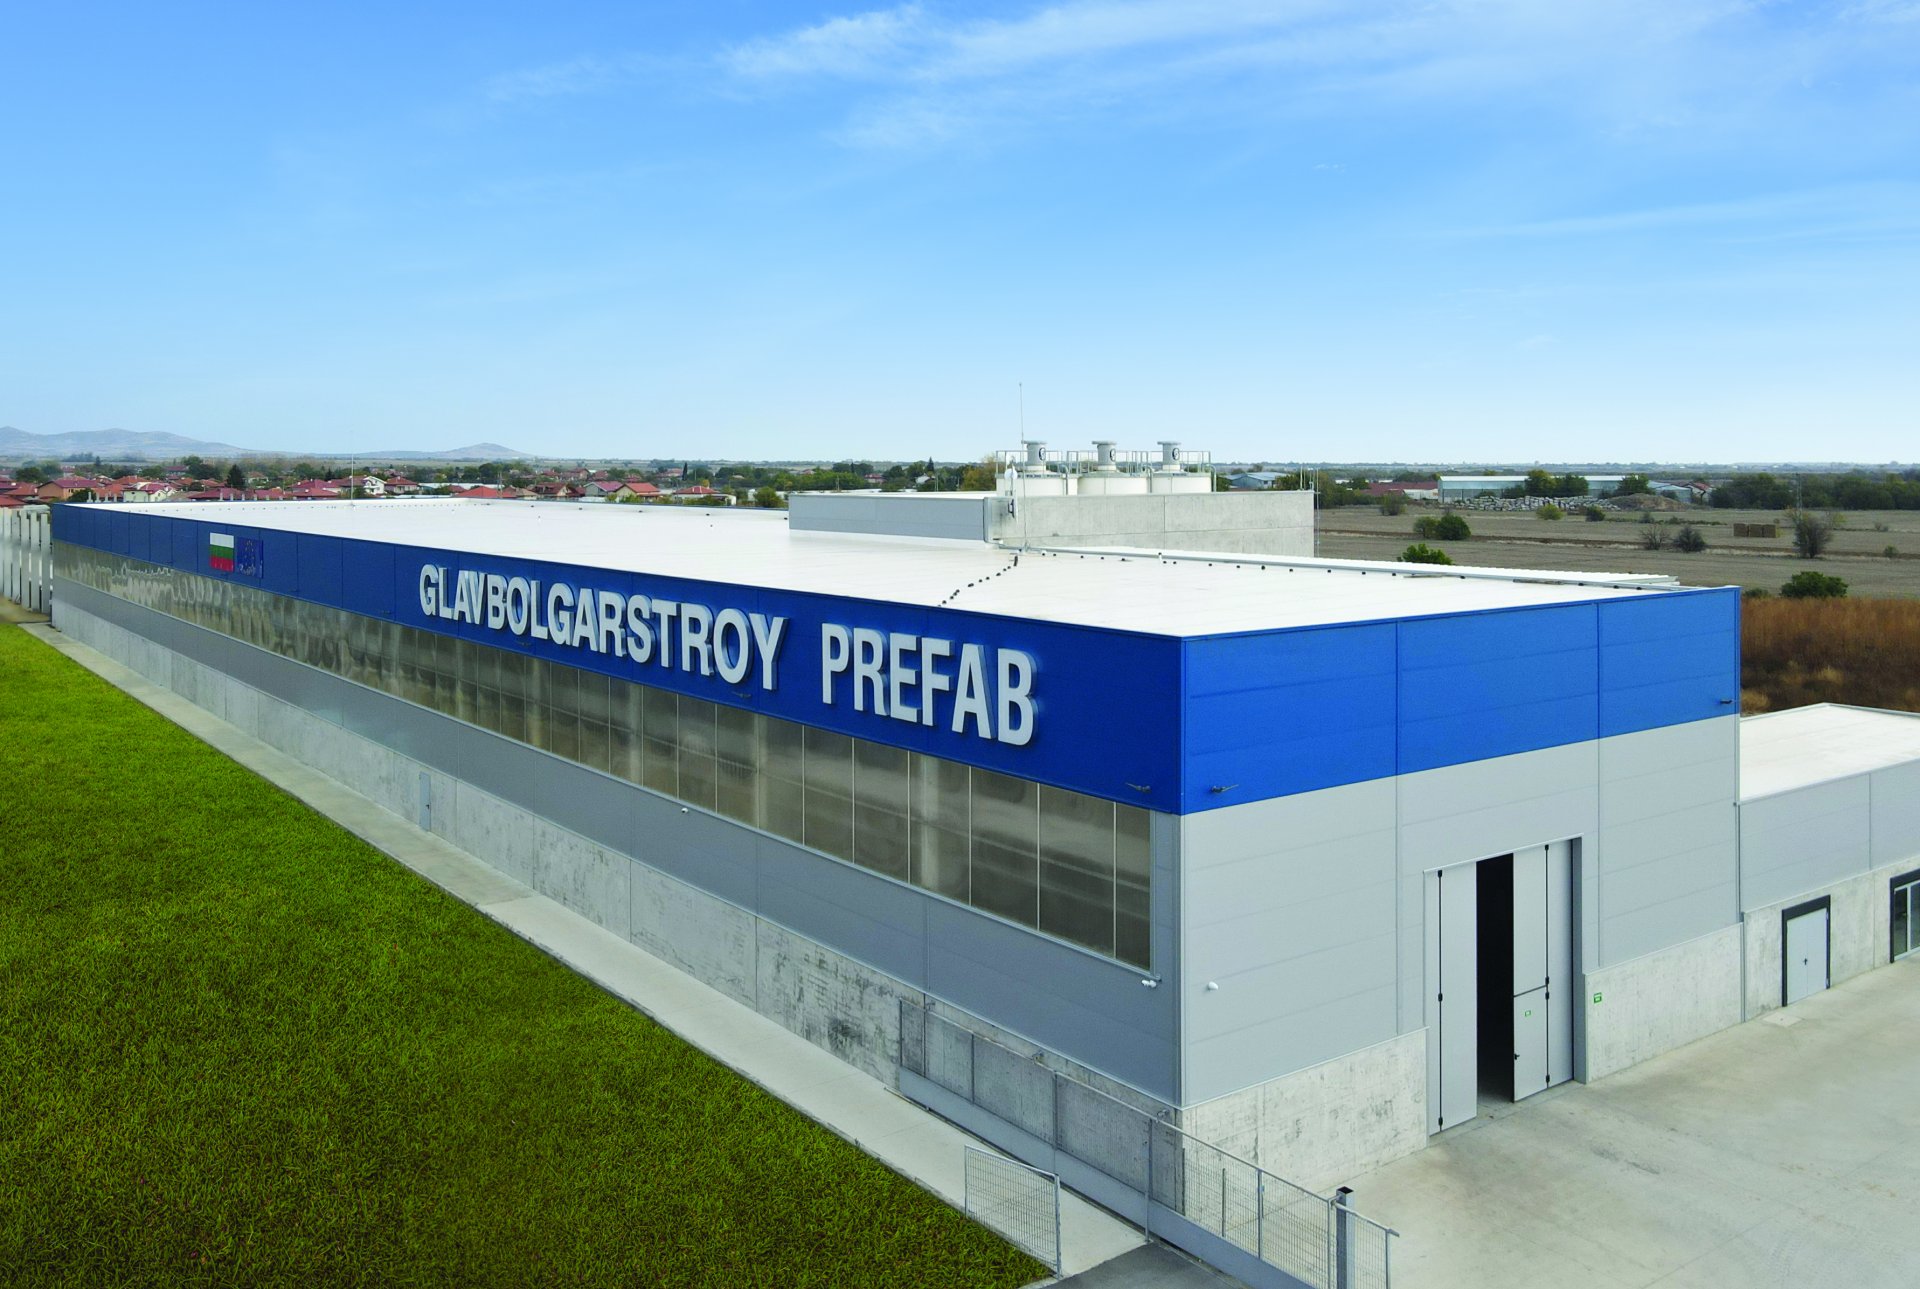 Завод за предварително напрегнати стоманобетонни елементи "Главболгарстрой Прифаб"